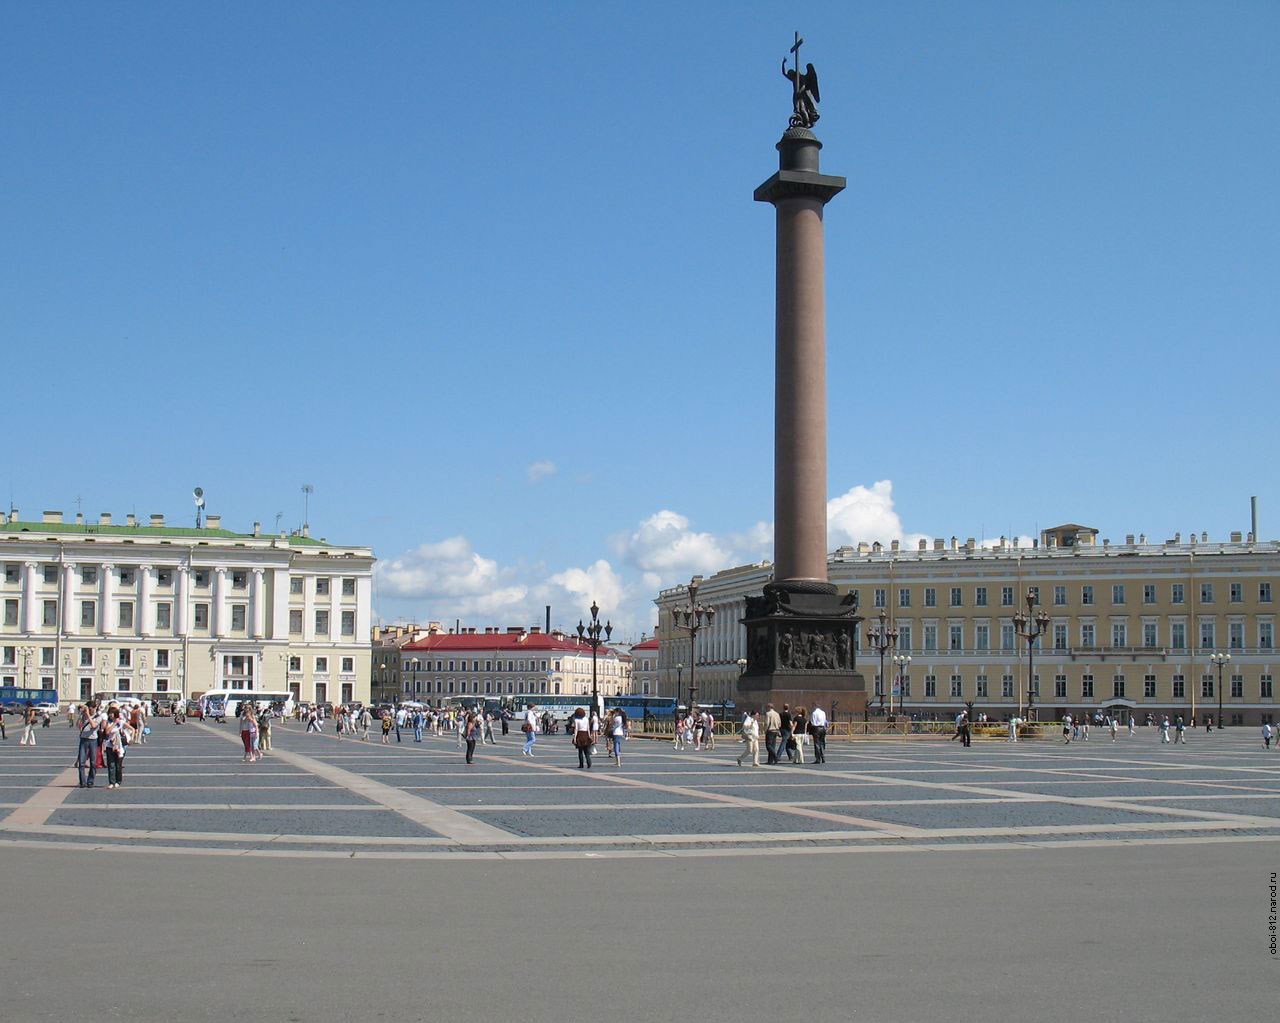 Александровская колонна на Дворцовой площади в Санкт-Петербурге